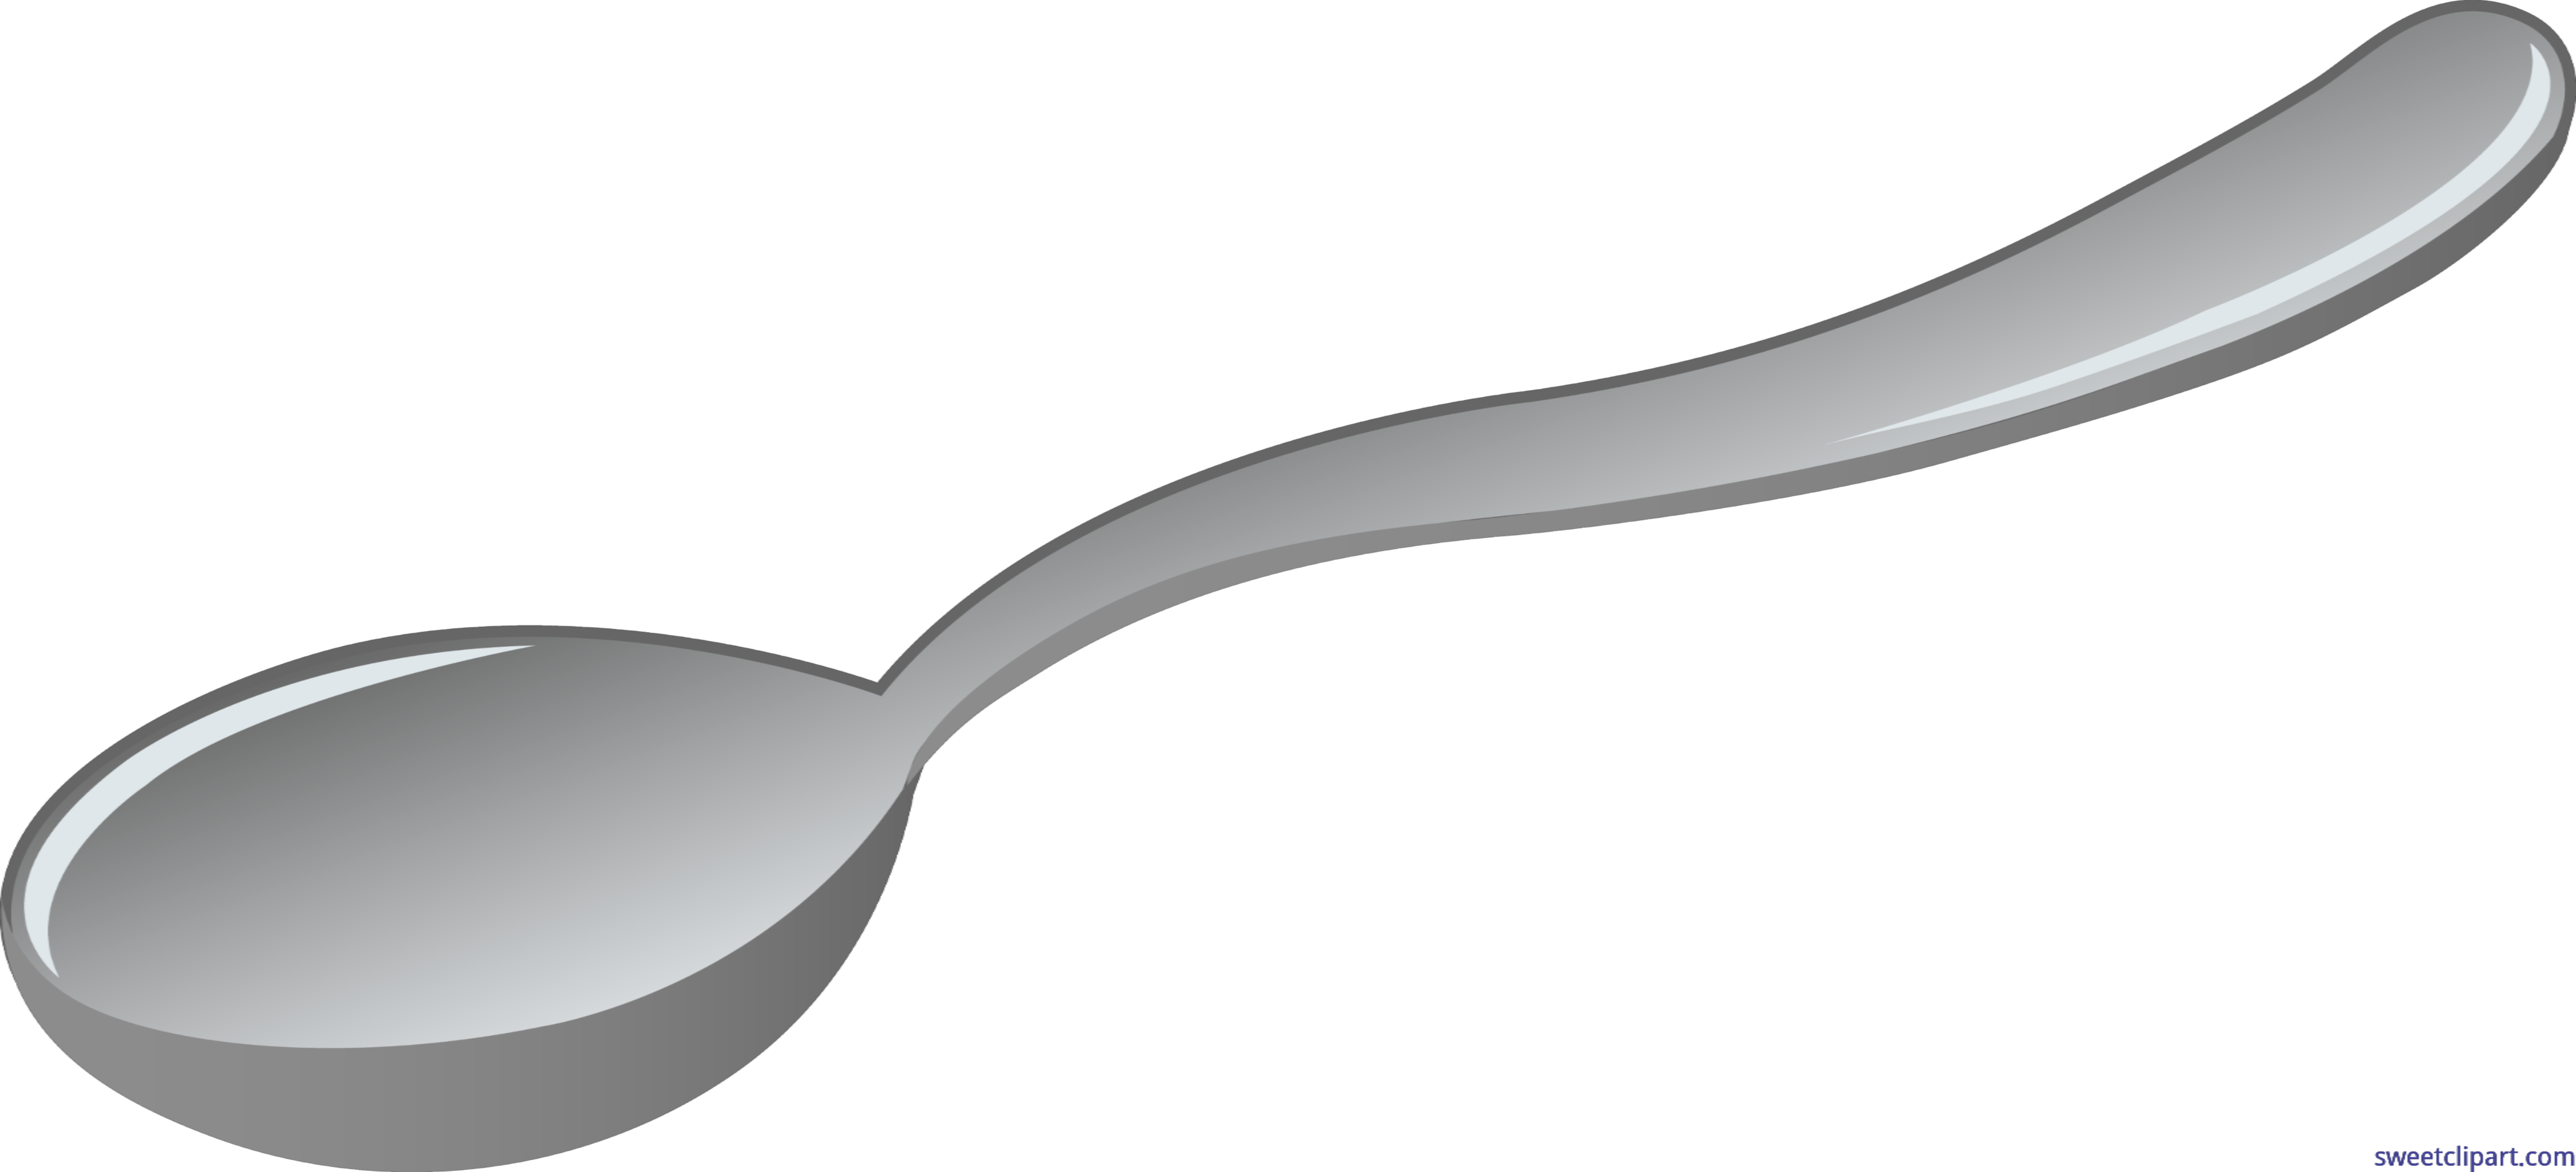 medical clipart utensil